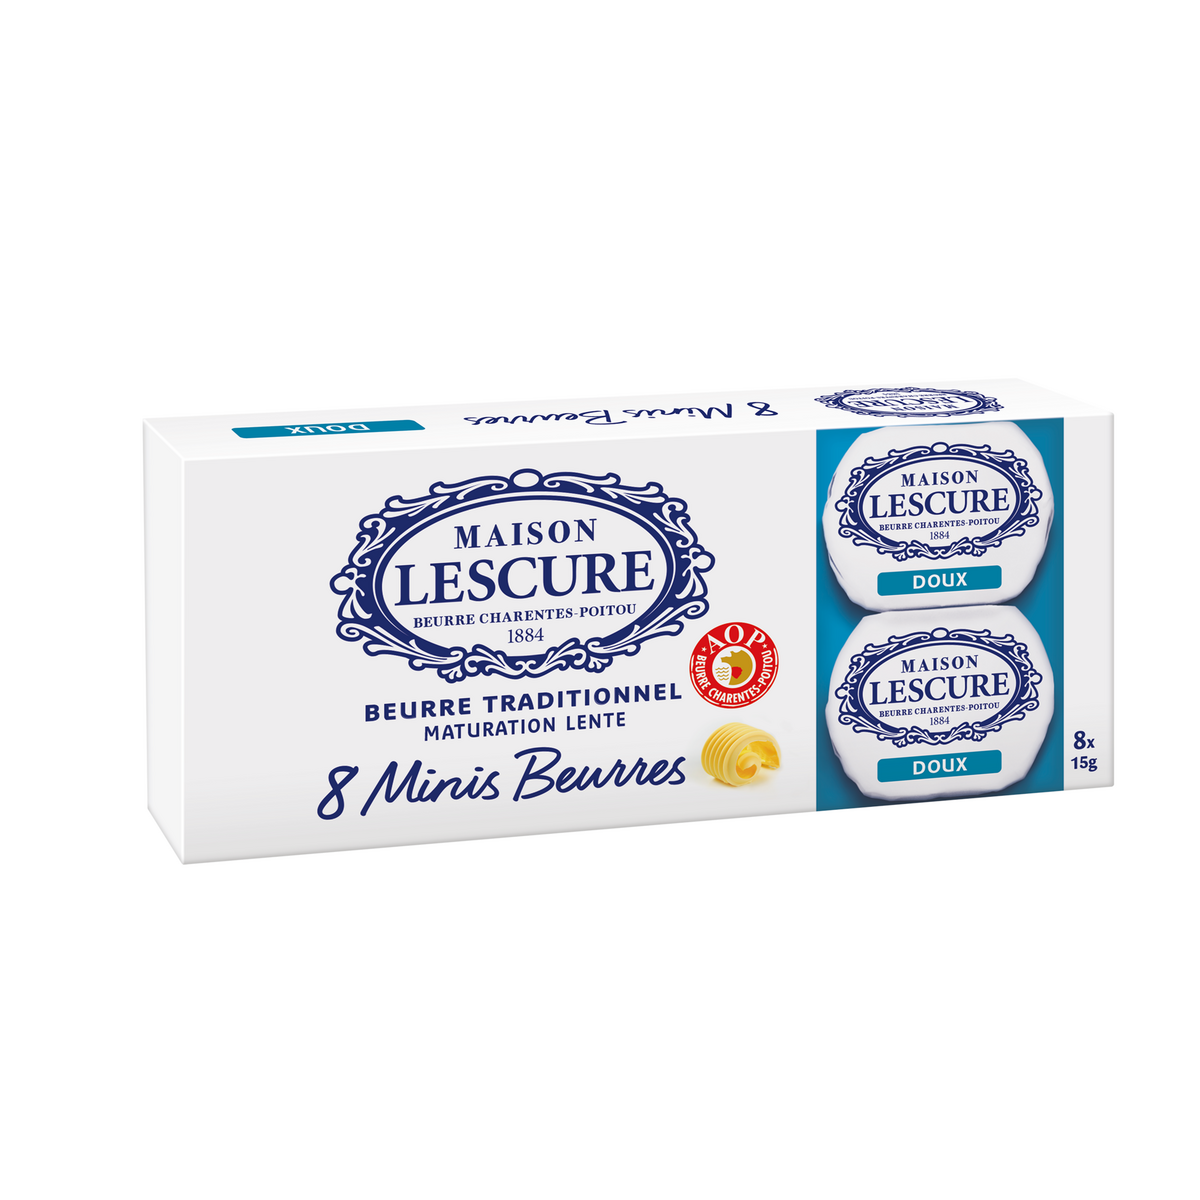 MAISON LESCURE Mini Beurre traditionnel maturation lente doux AOP 8 portions 120g